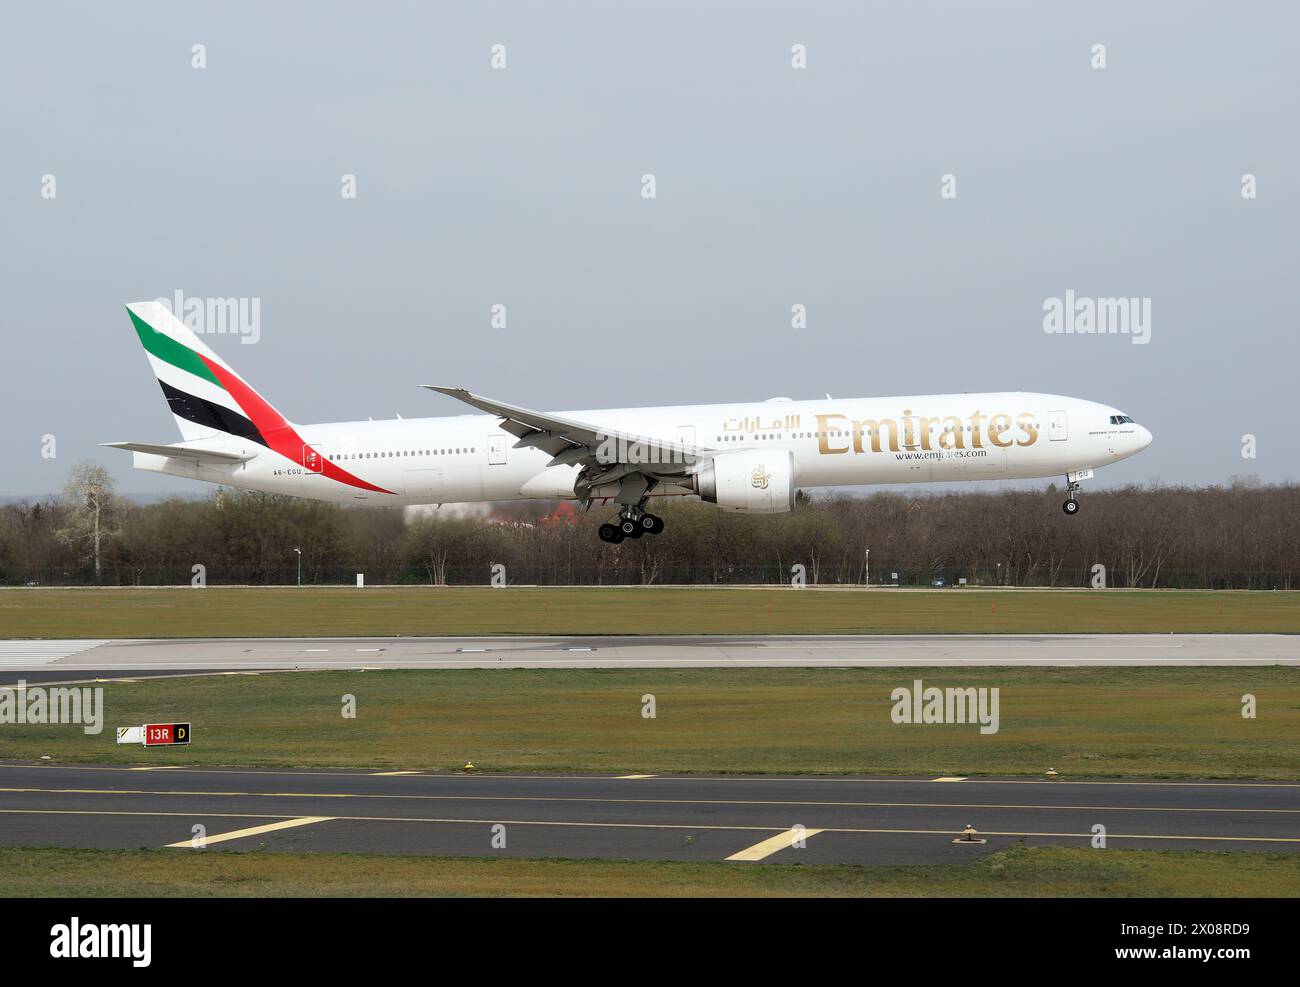 Emirates, (es la aerolínea más grande de los Emiratos Árabes Unidos), Boeing 777-300 avión, Cargo hill, Budapest, Hungría, Magyarország, Europa Foto de stock